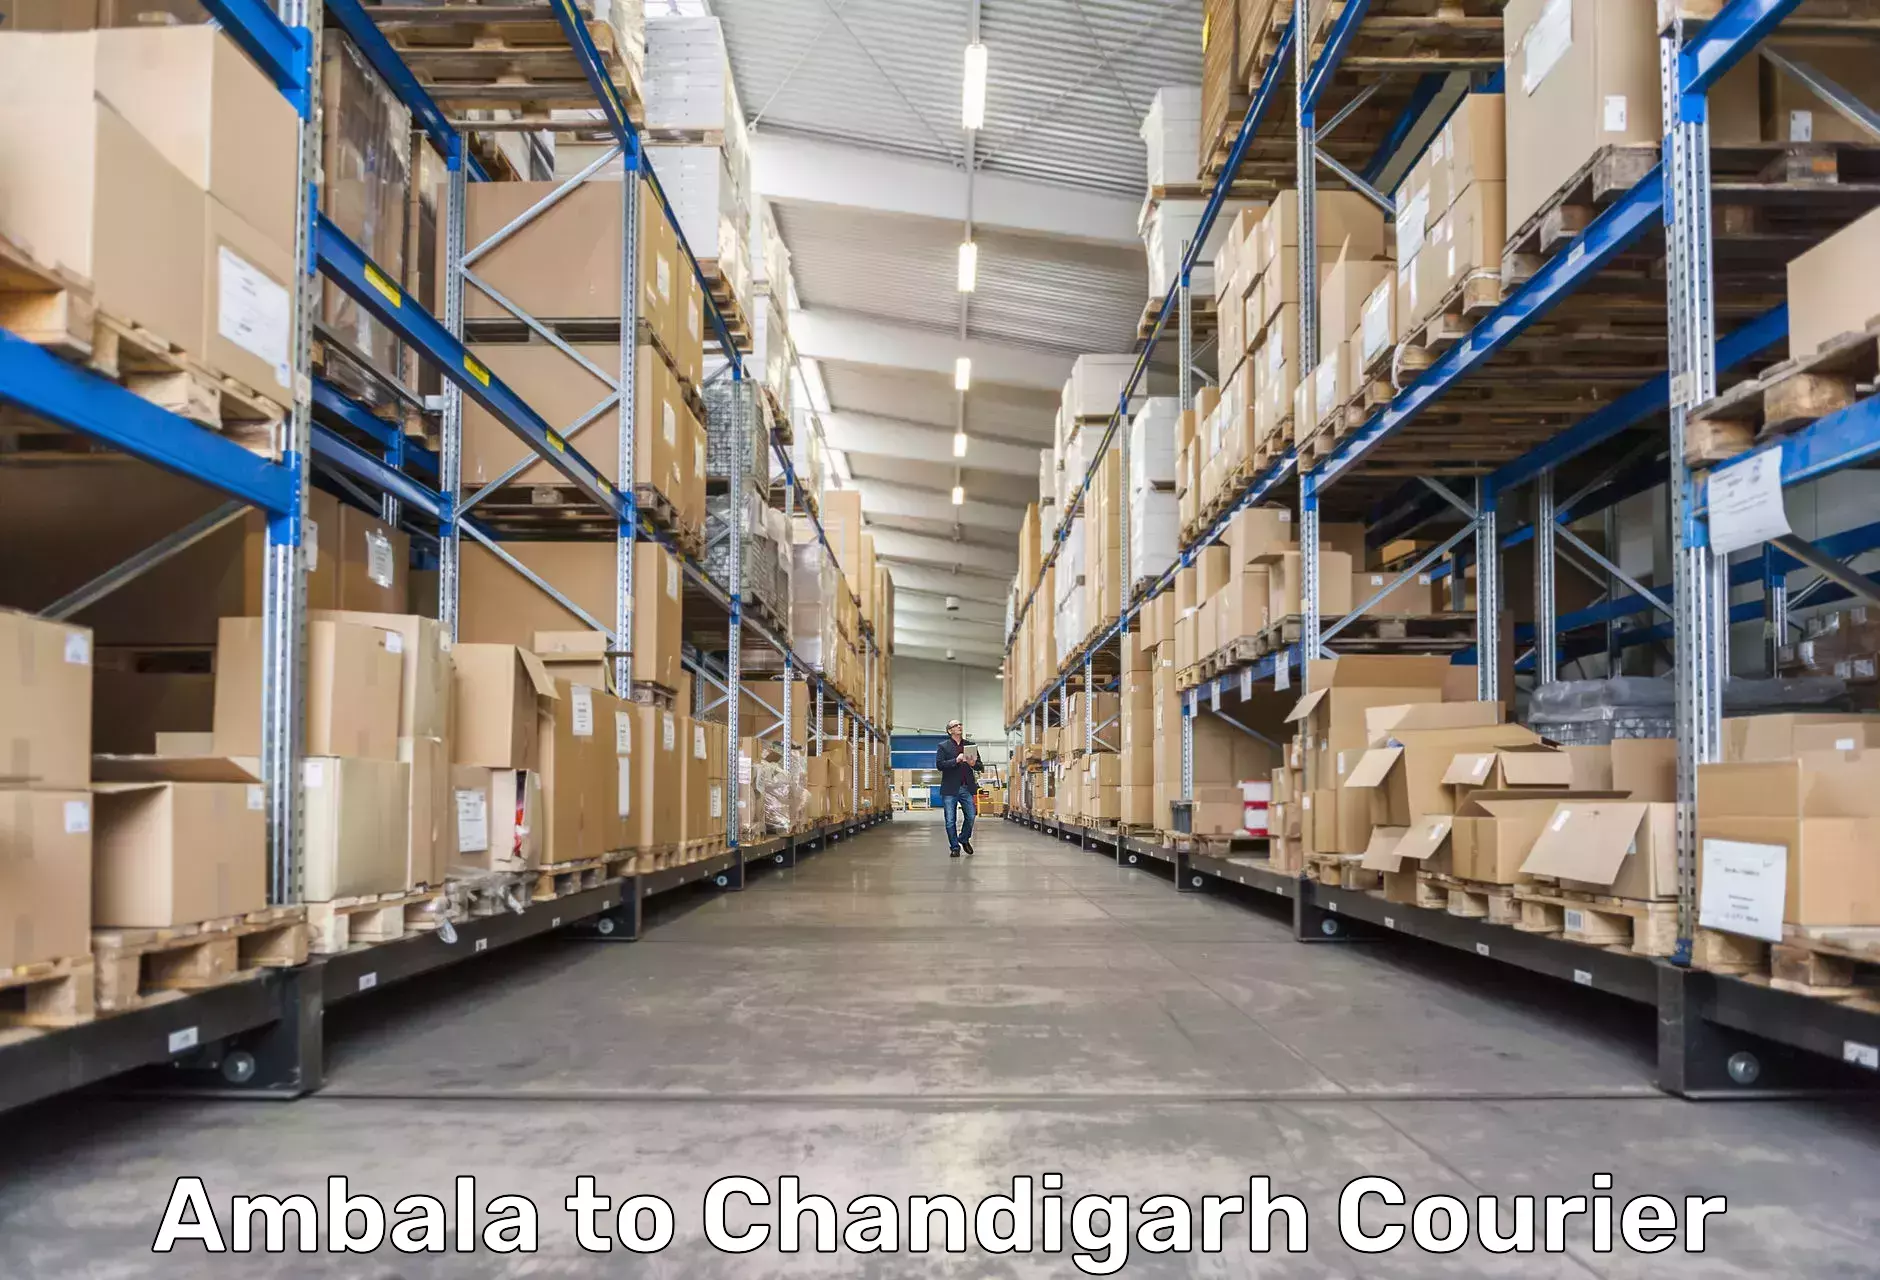 Expedited shipping methods Ambala to Chandigarh